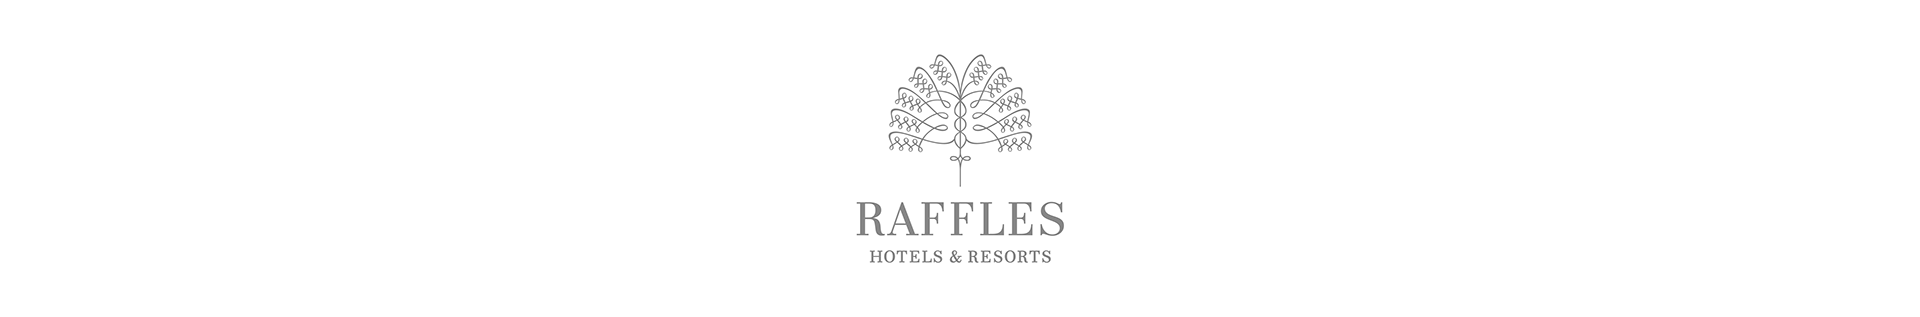 Raffles logo